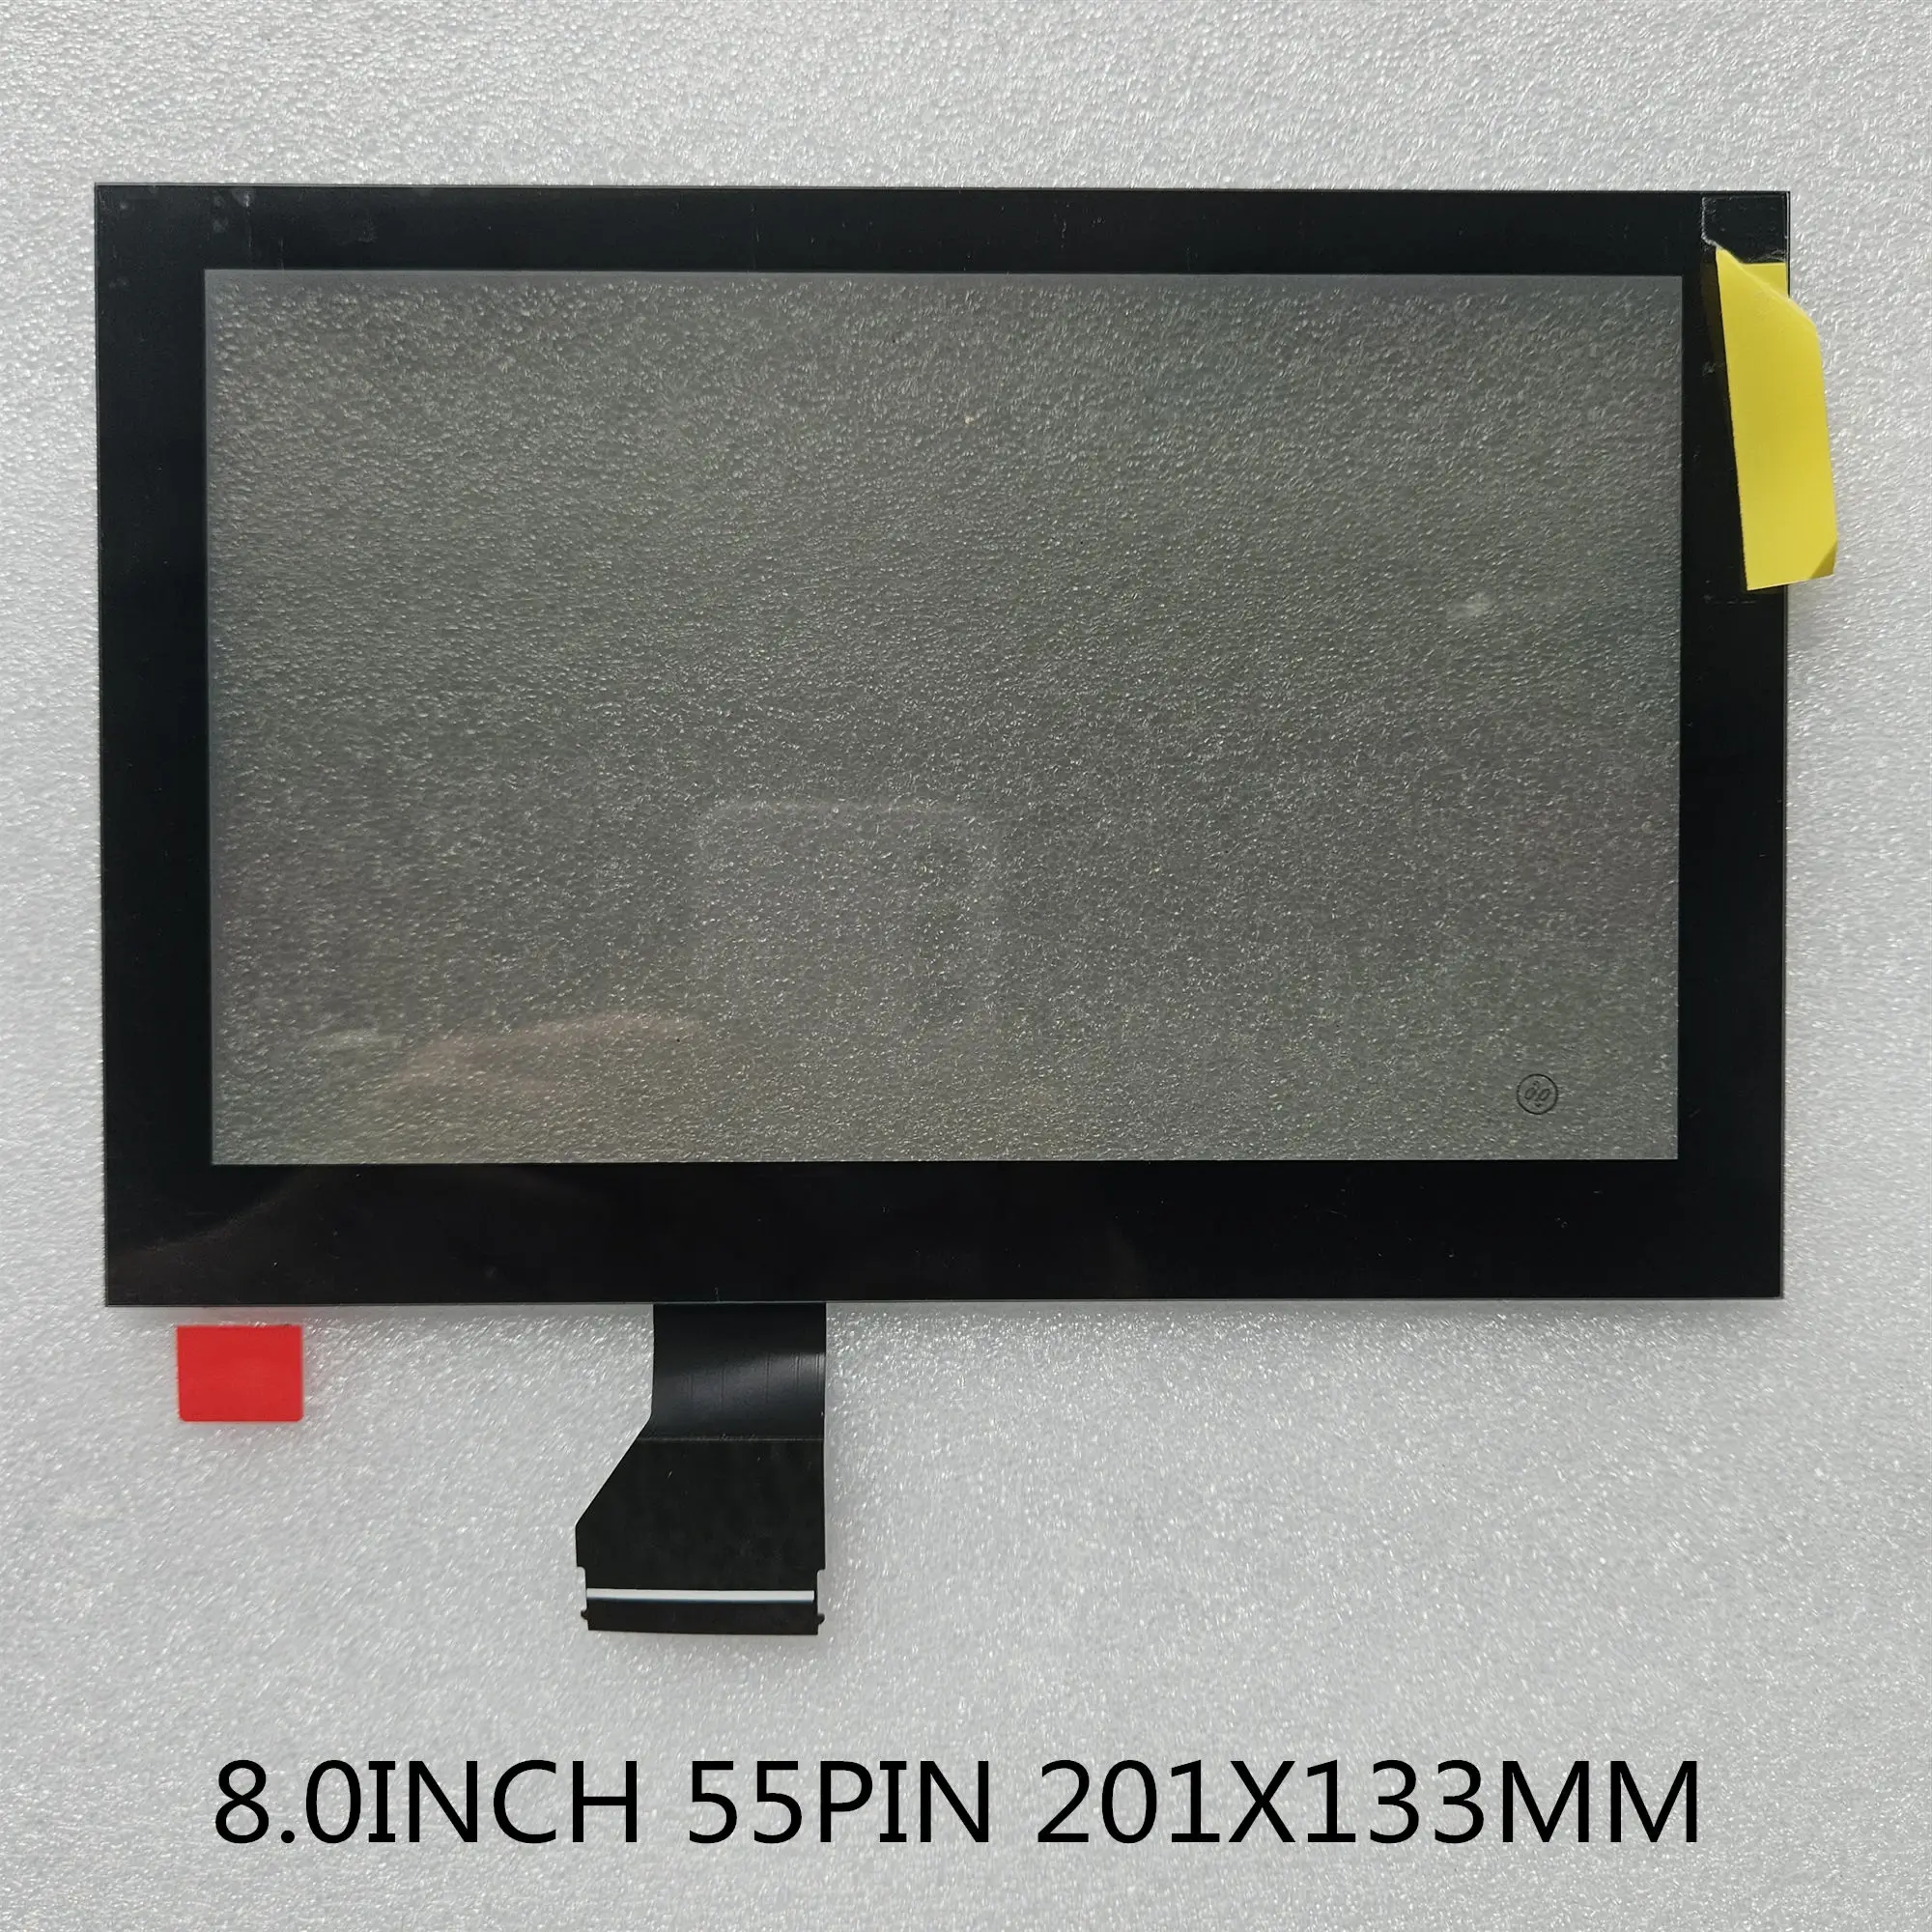 

QVK Новый 8-дюймовый стеклянный сенсорный экран панель дигитайзер объектив для 2017 Peugeot Citroen C6 LAM080G025A DVD плеер